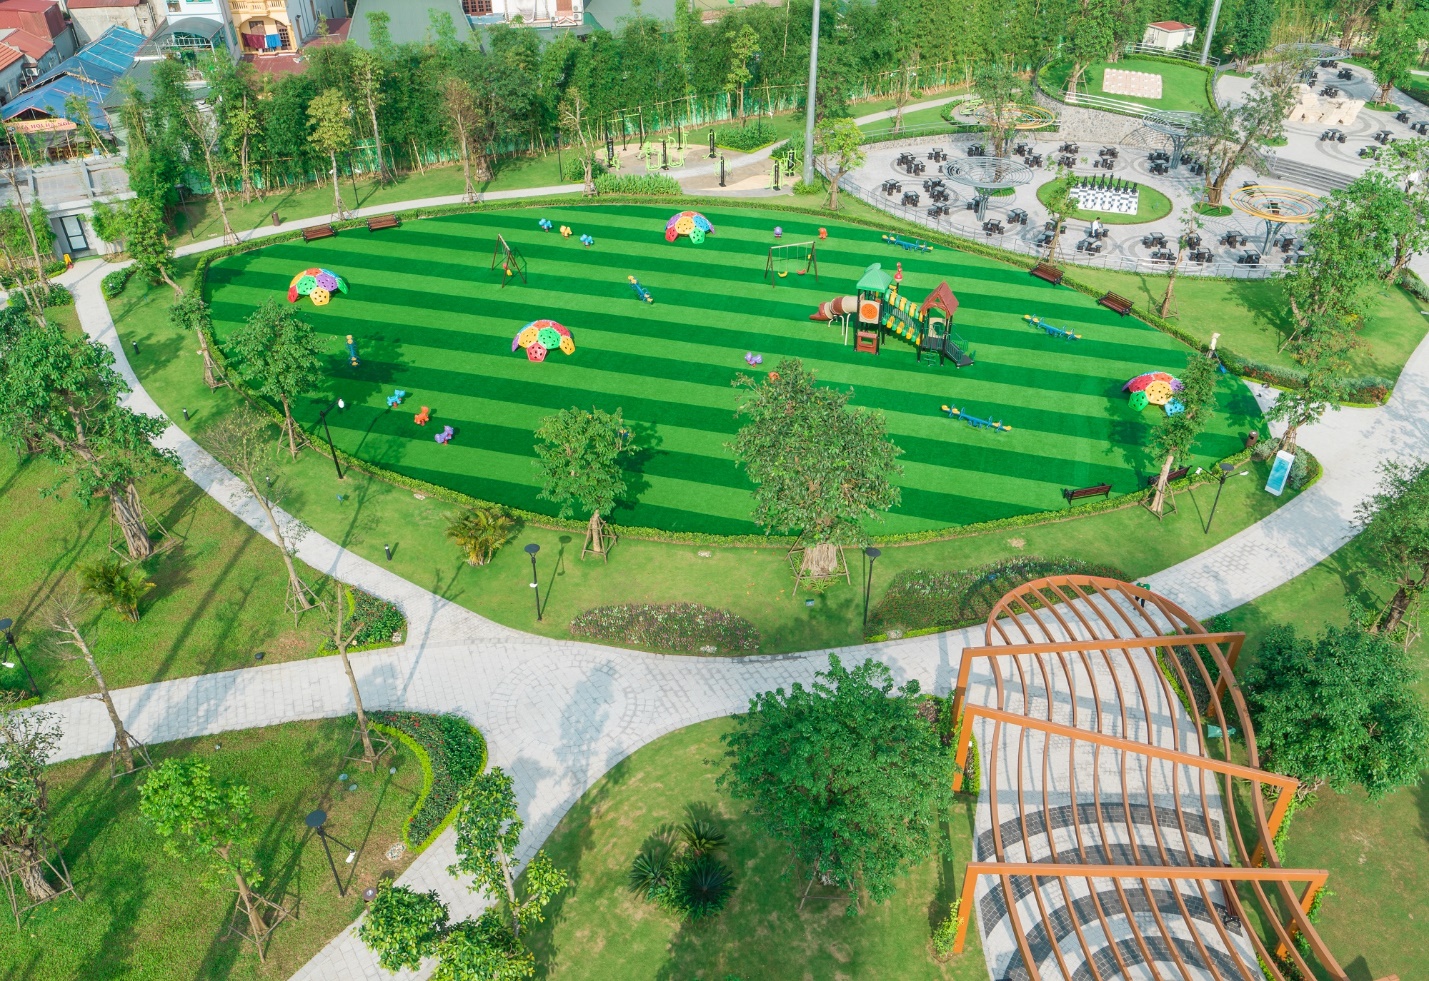 Công viên thể thao gần dự án đáp ứng nhu cầu rèn luyện sức khỏe cho cư dân